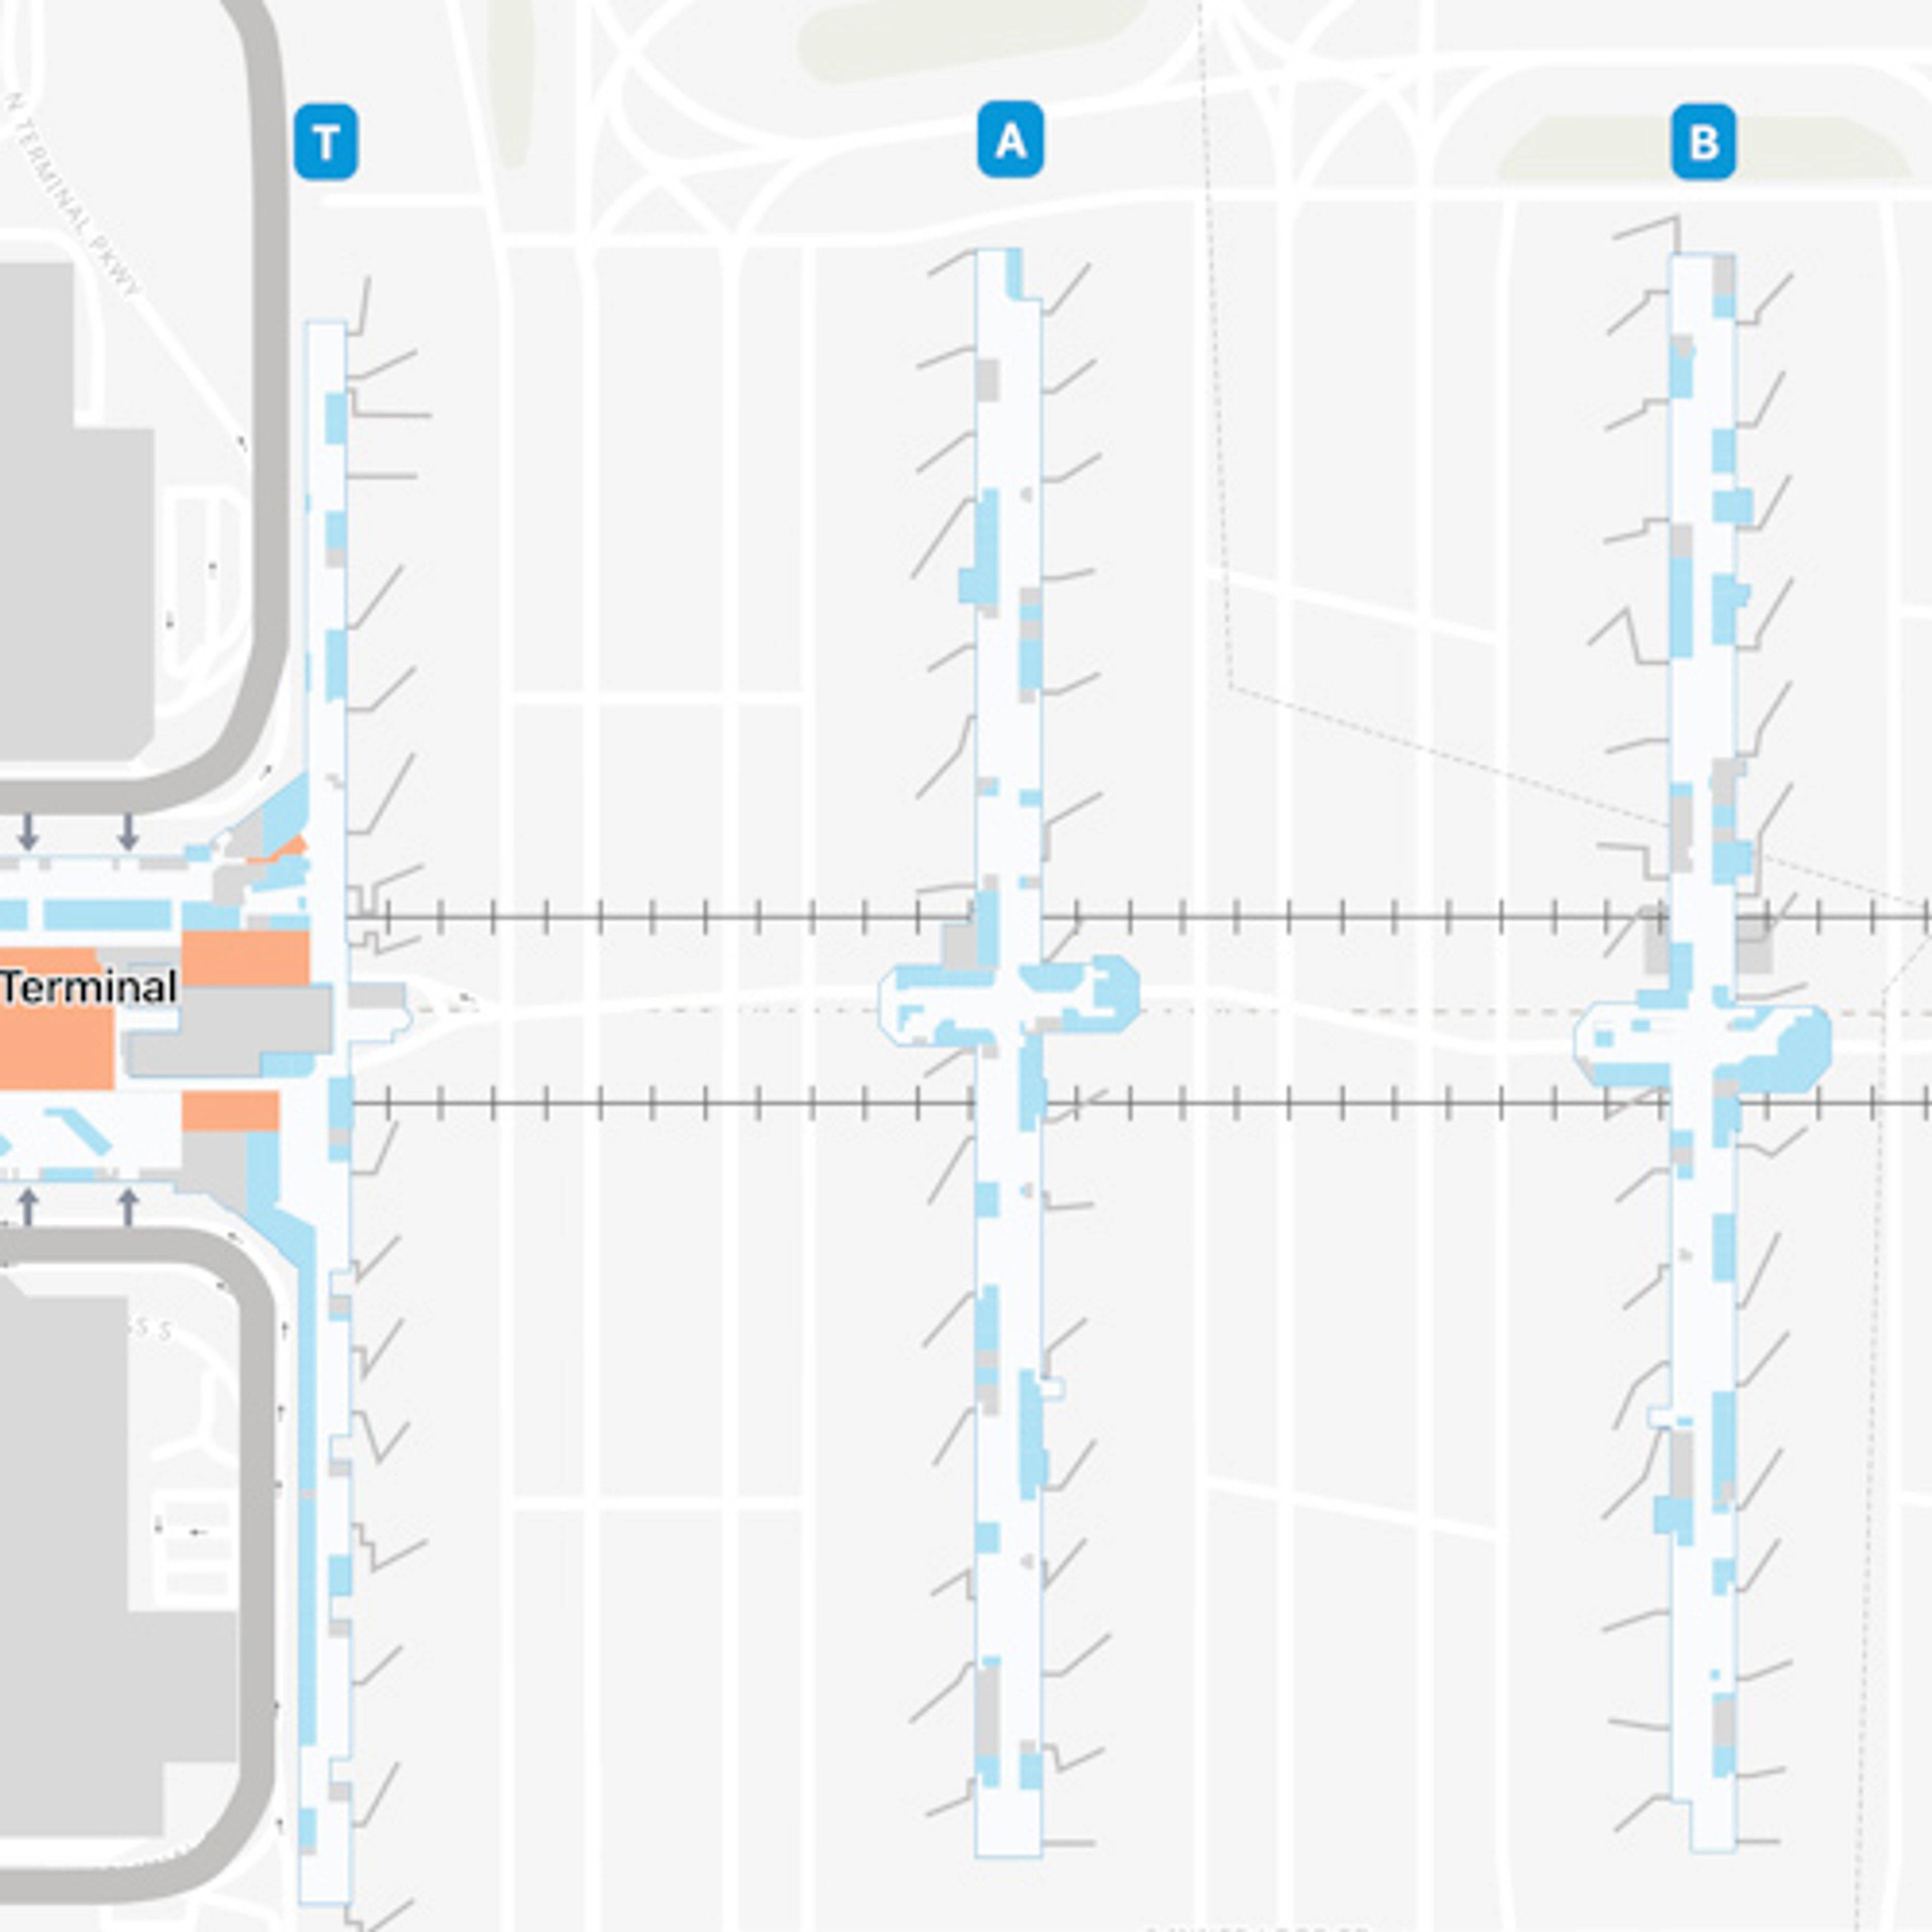 ATL Concourse A Map